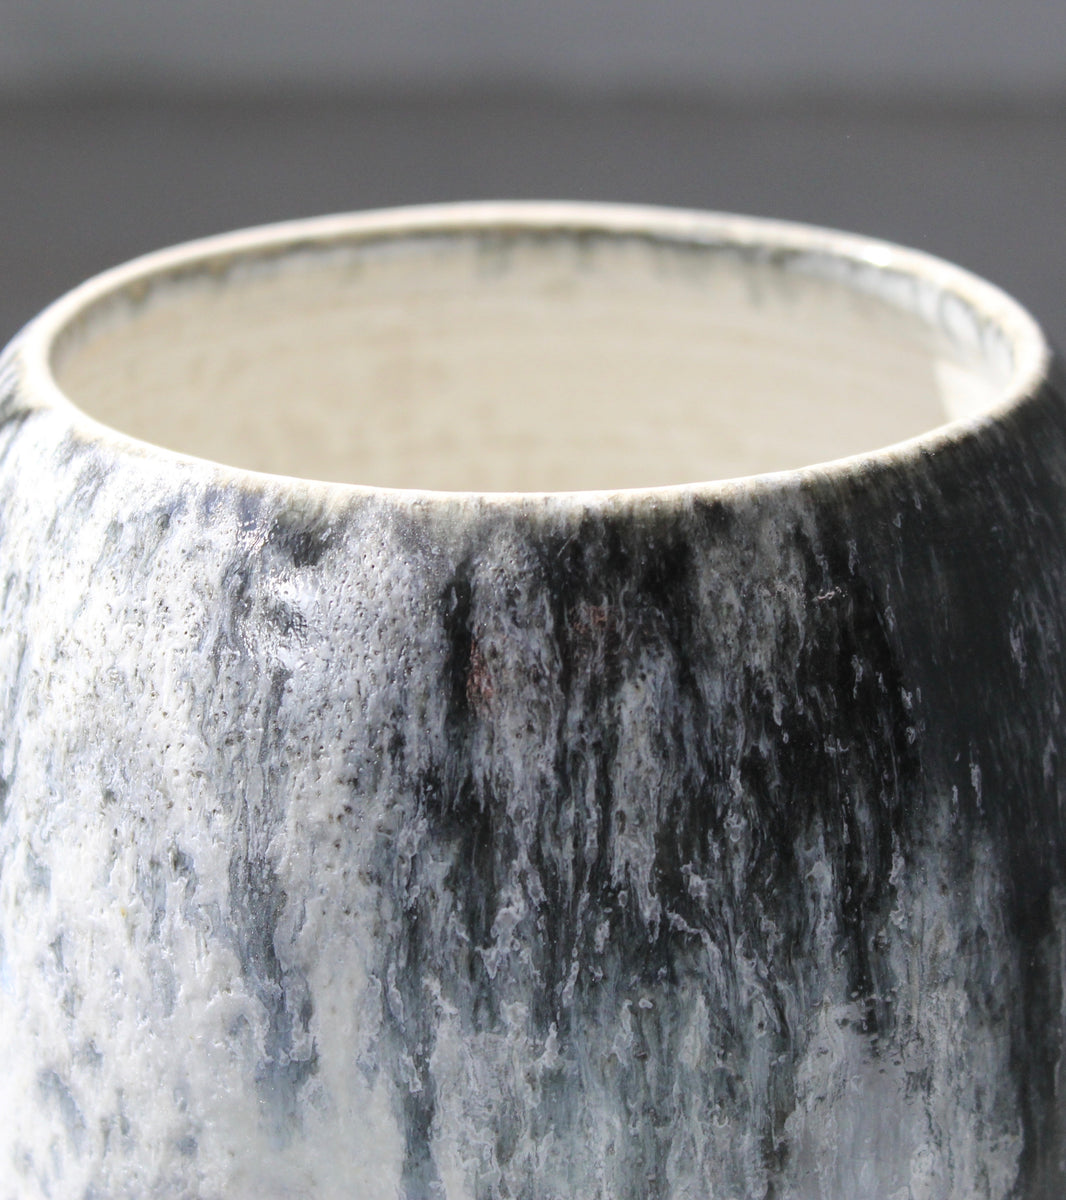 Broad-Shouldered Baluster Vase / Blue Glaze